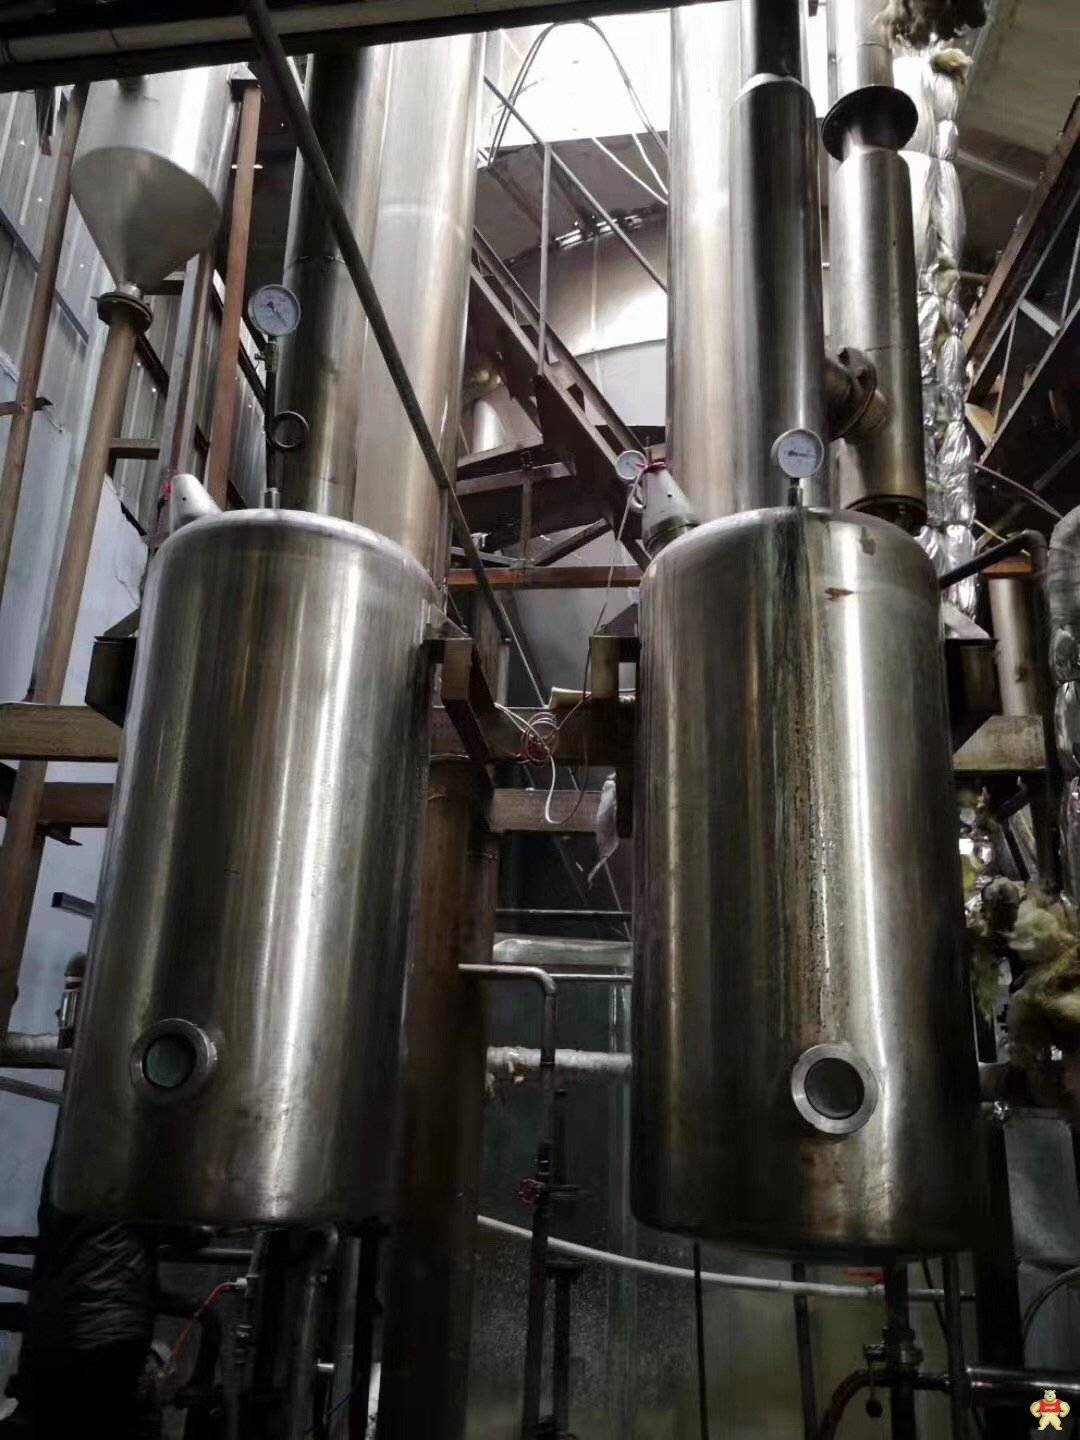 二手3吨双效蒸发器便宜处理 二手蒸发器,二手不锈钢蒸发器,二手3吨双效蒸发器,二手不锈钢蒸发器,回收二手蒸发器